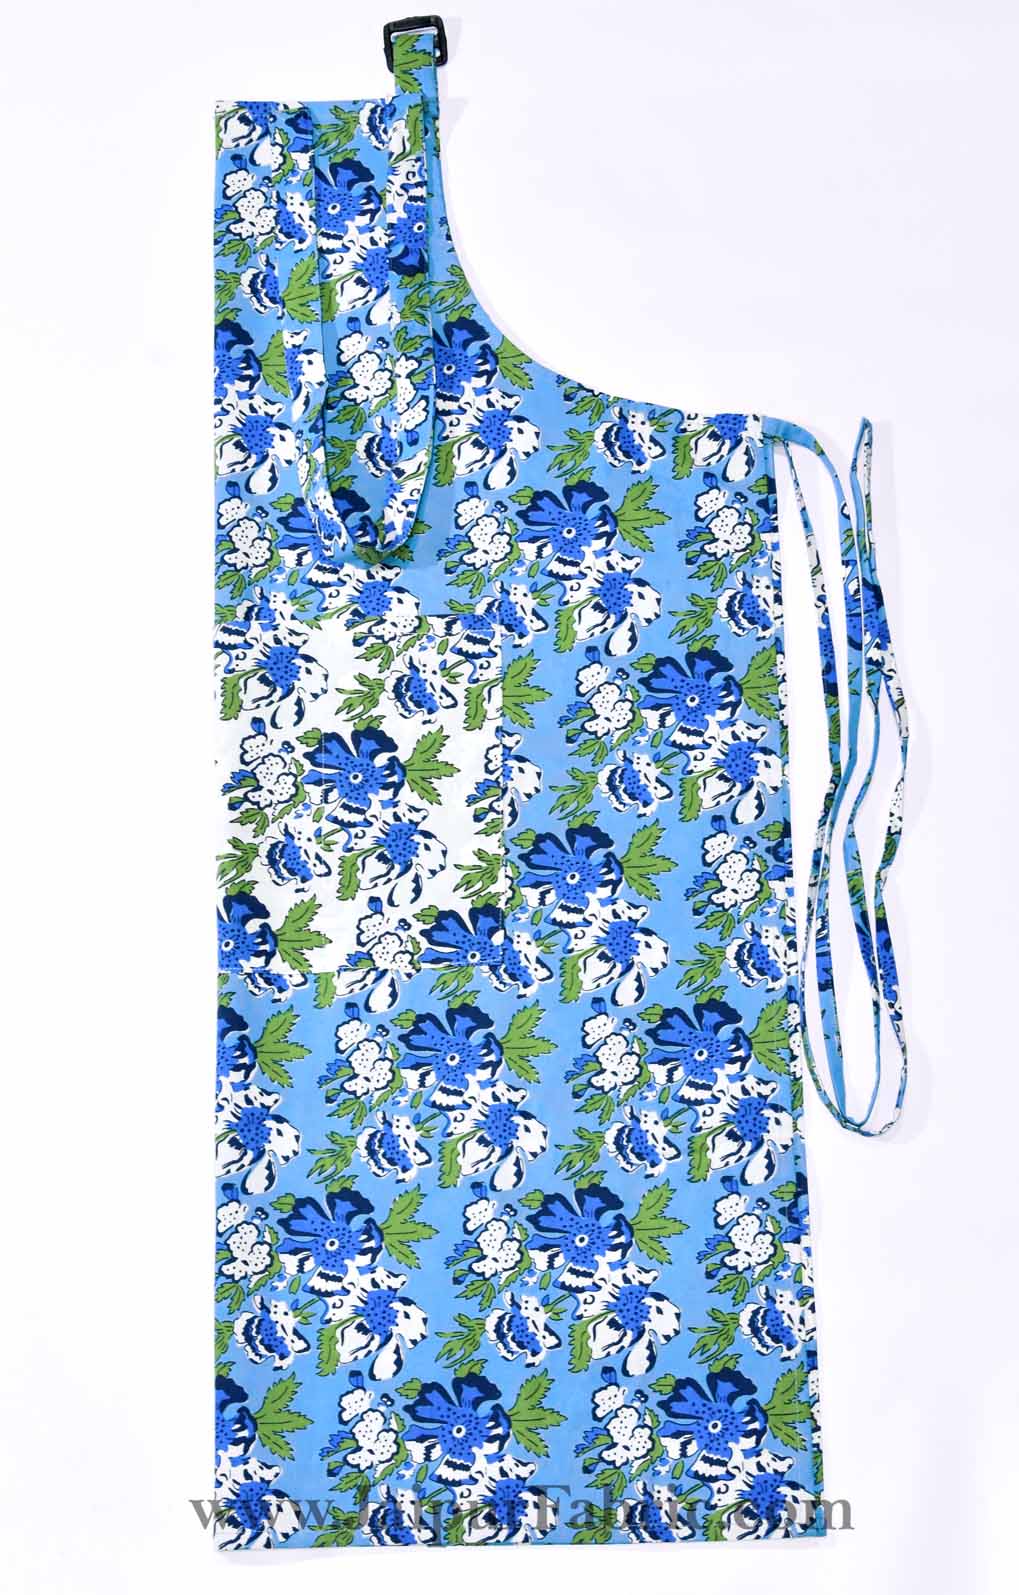 Floral garden turquoise blue apron